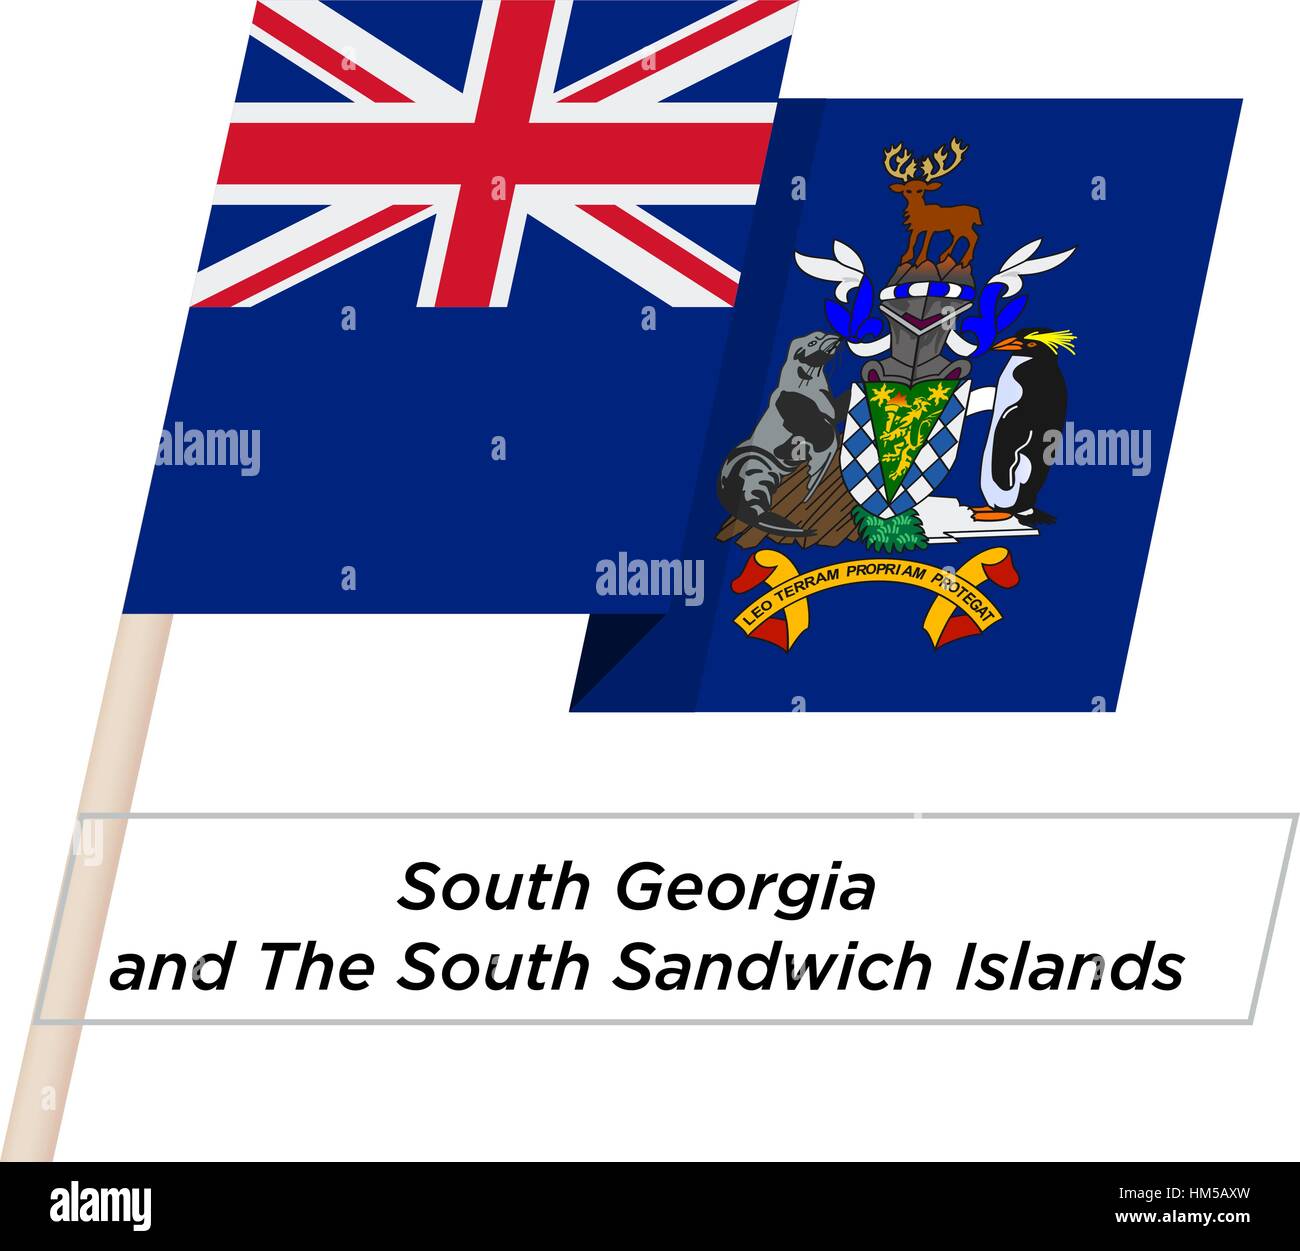 Südgeorgien und die Südlichen Sandwichinseln Band wehende Flagge, Isolated on White. Vektor-Illustration. Stock Vektor